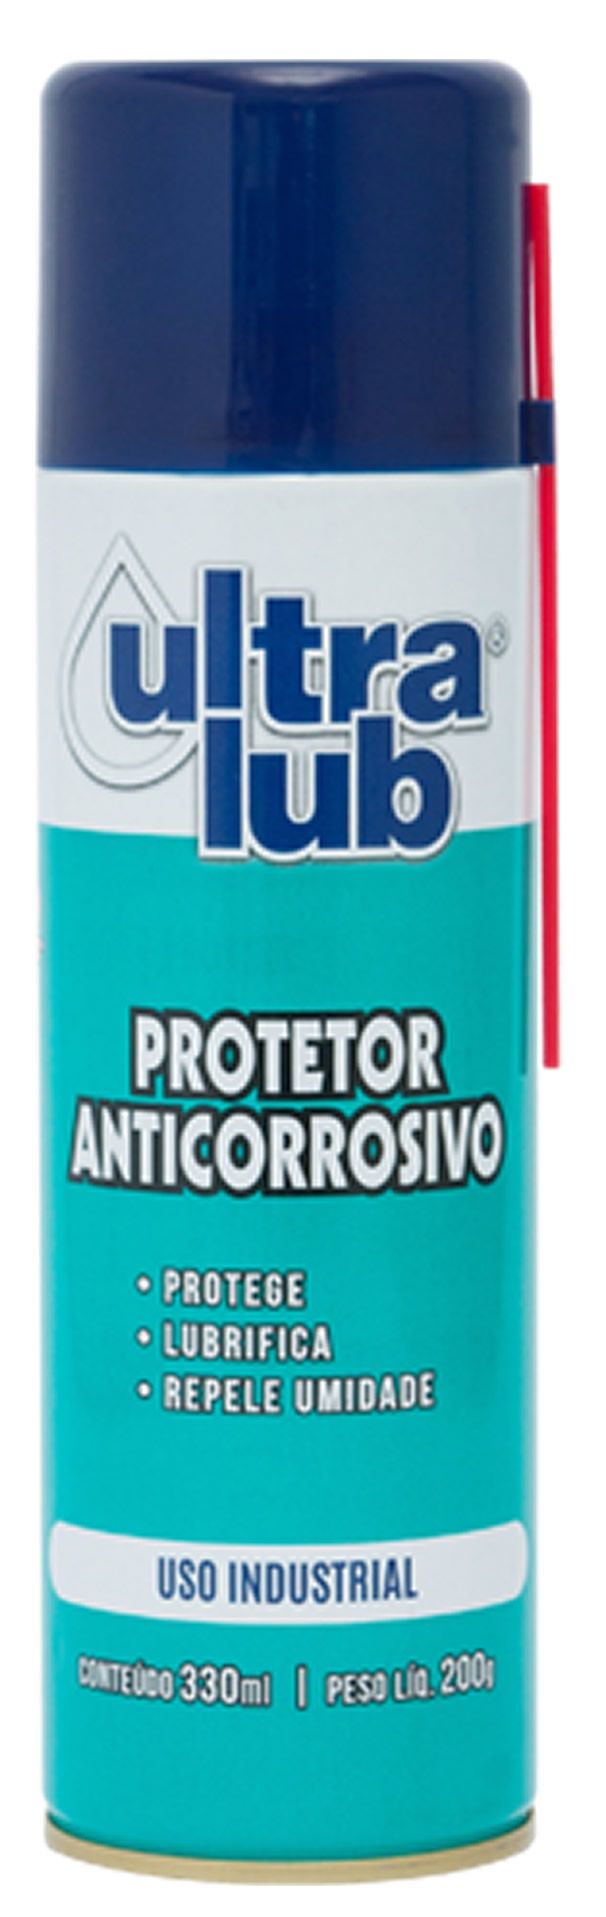 Protetor Anticorrosivo